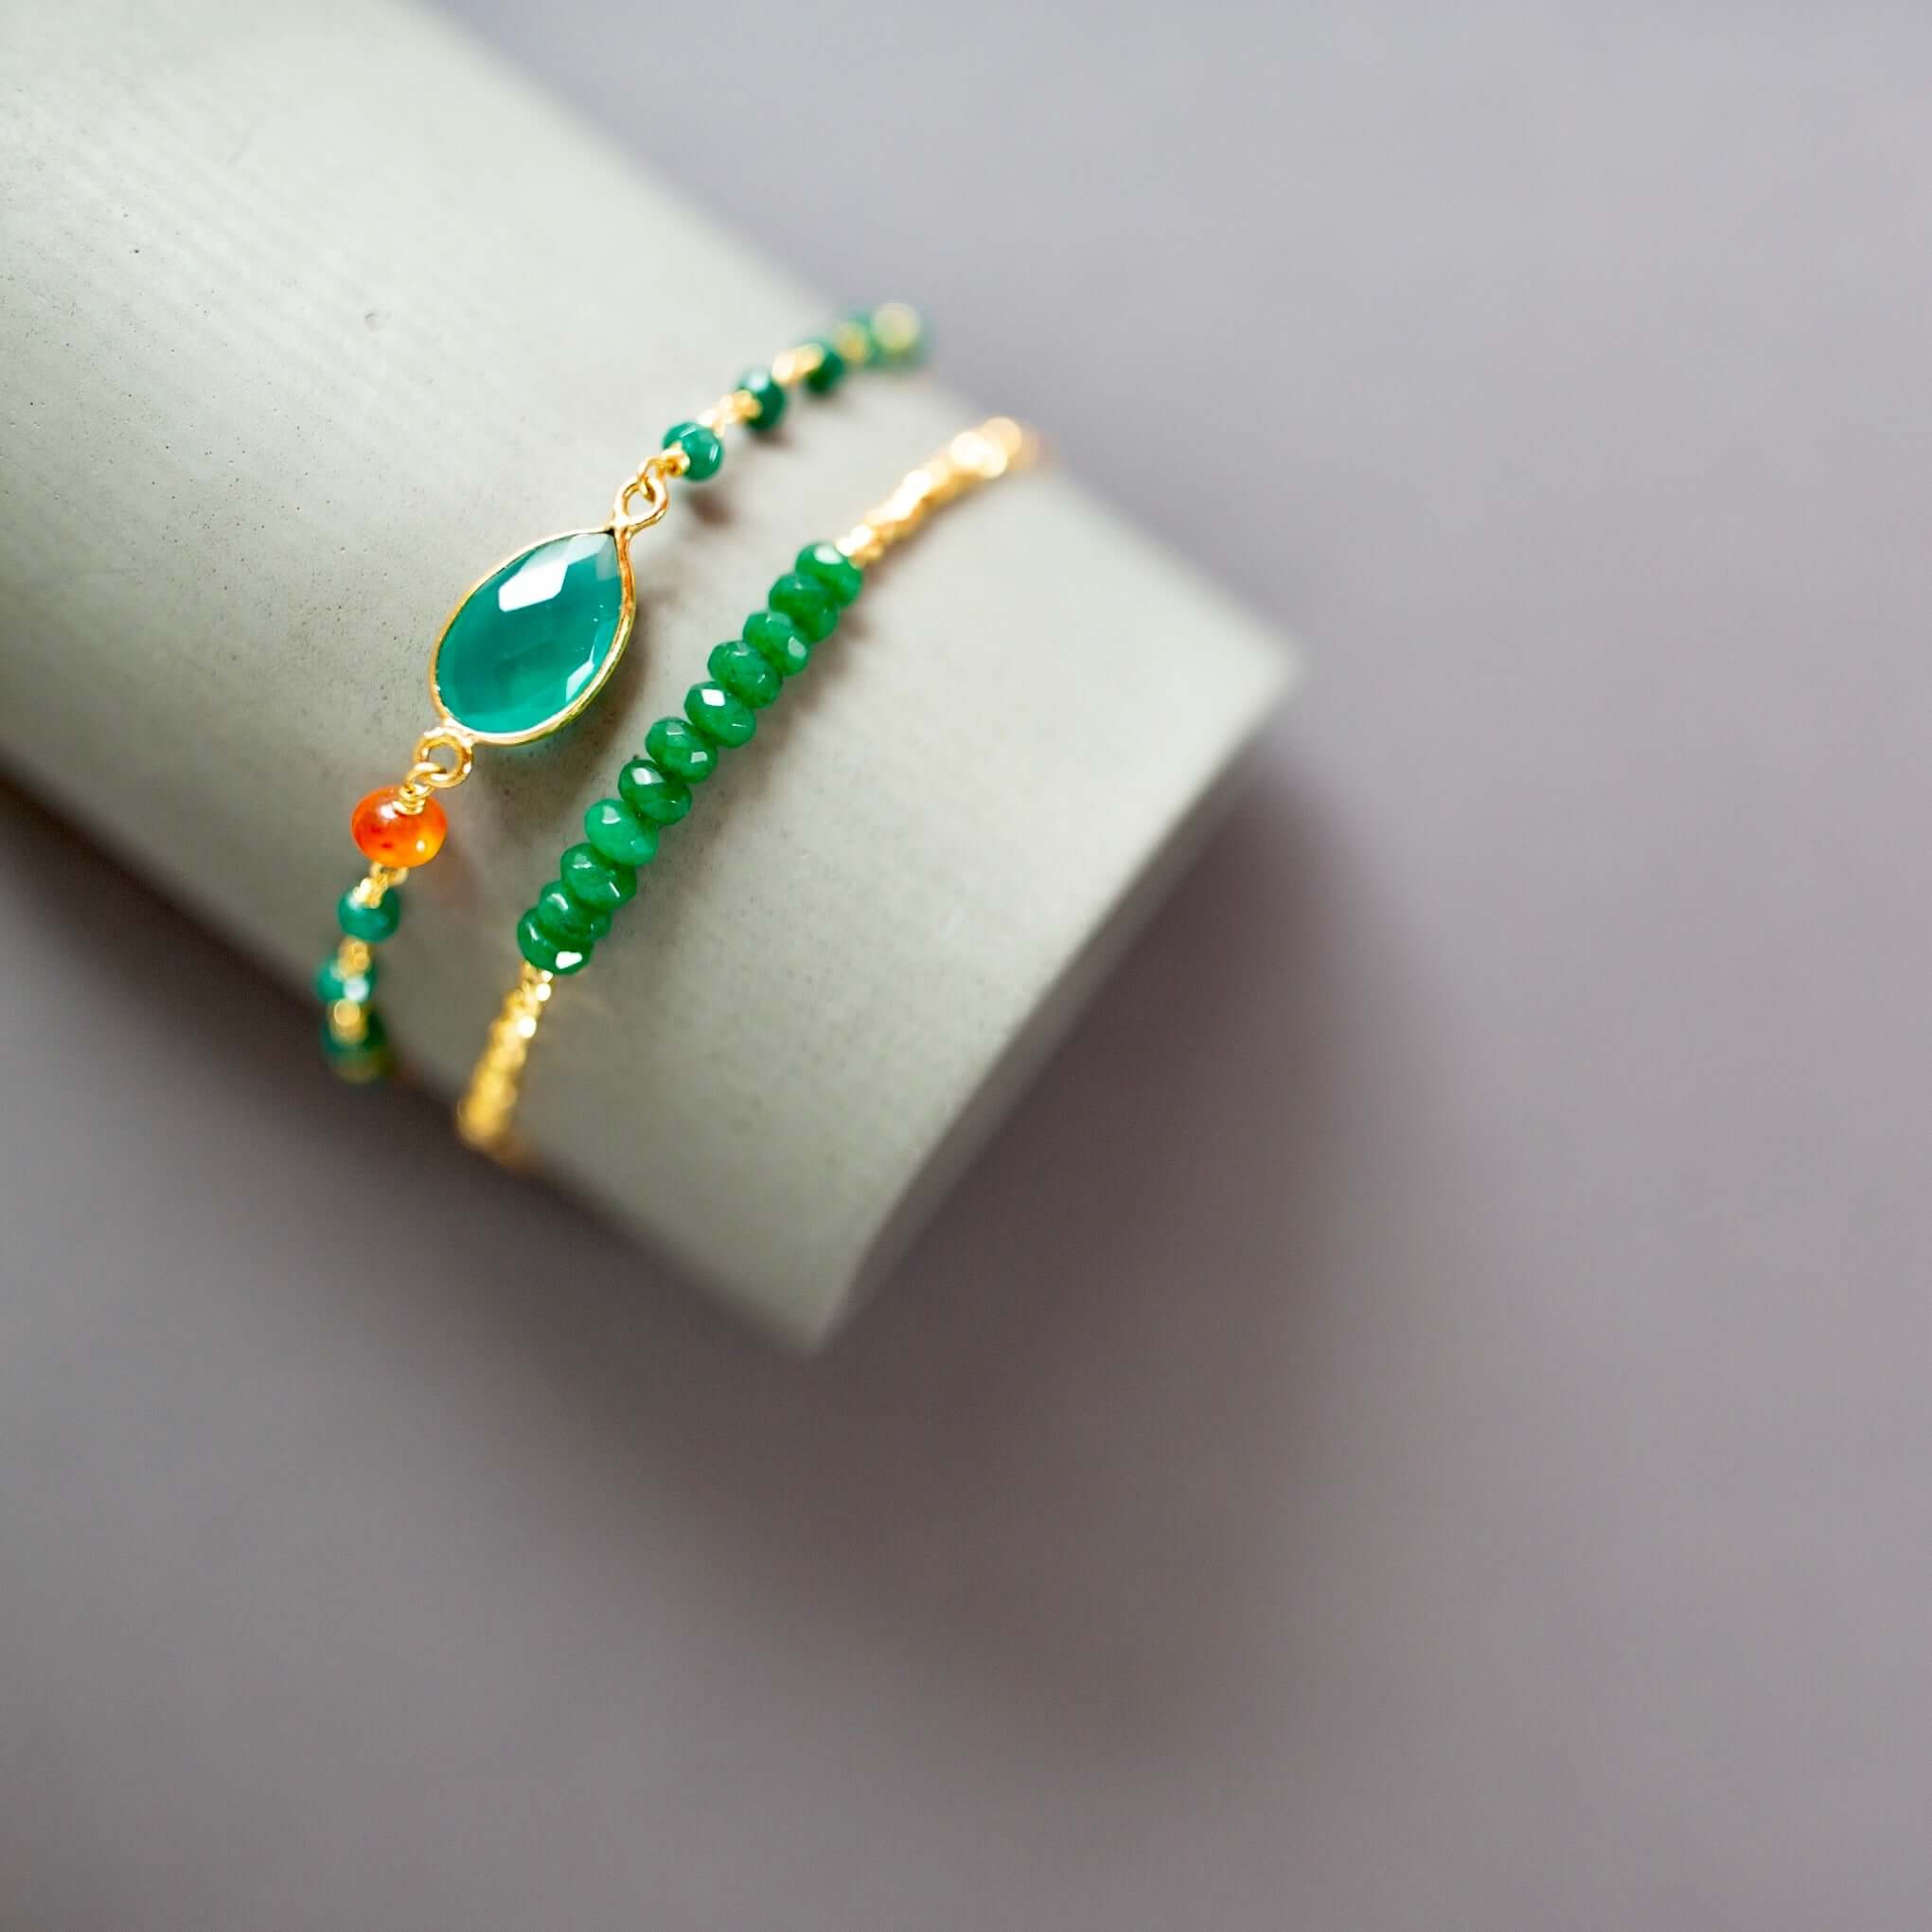 Adjustable Green Onyx and Green Jade Stacking Bracelet Set - Easy Elegance